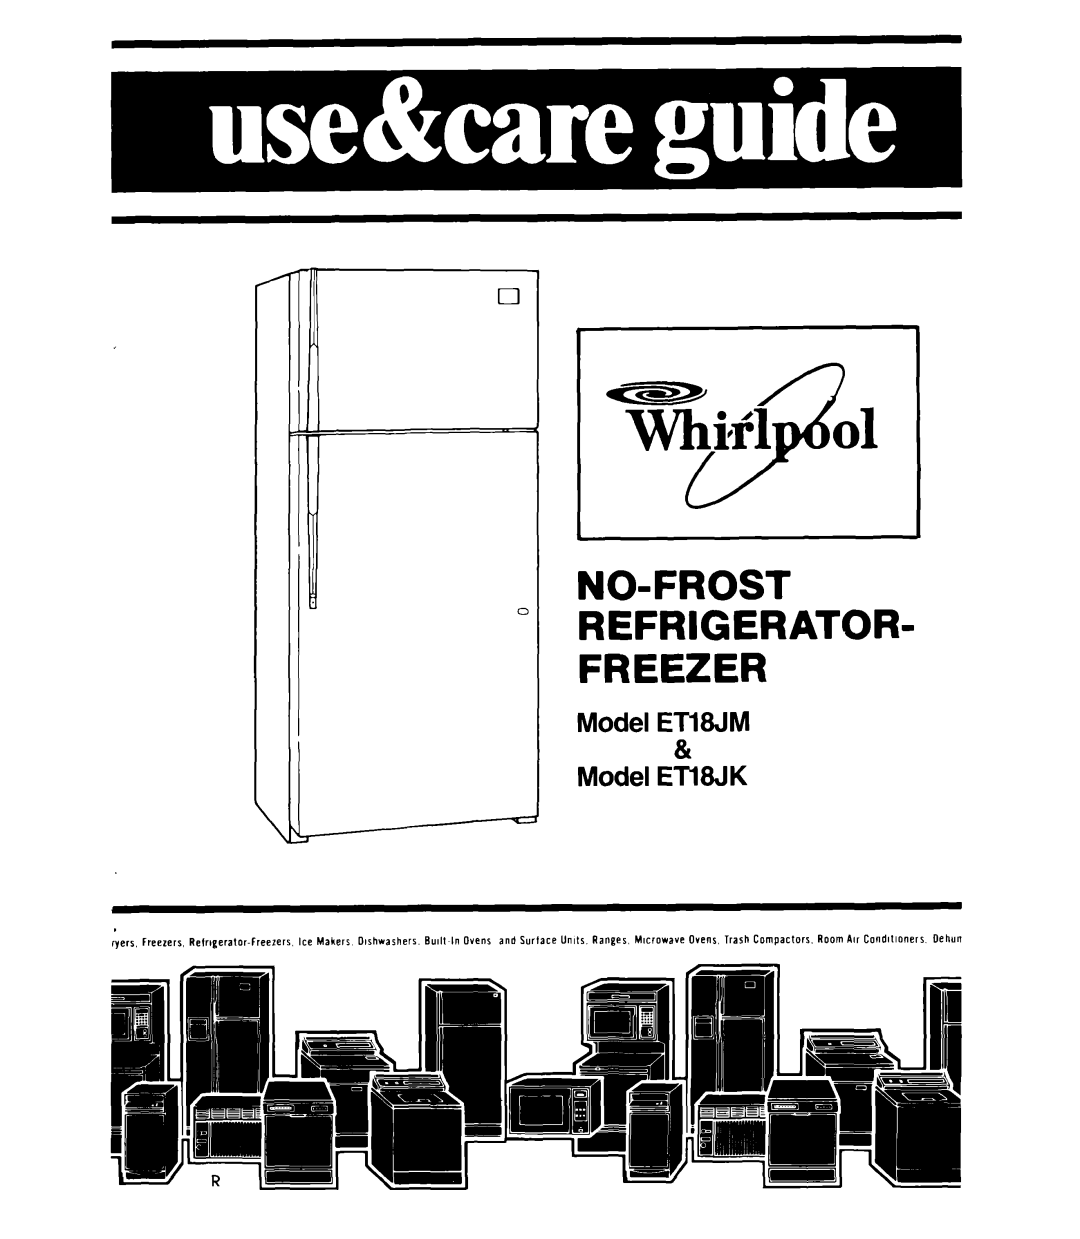 Whirlpool ET18JM, ET18JK manual No-Frost Refrigerator Freezer, Model ETWM & Model ETWK 